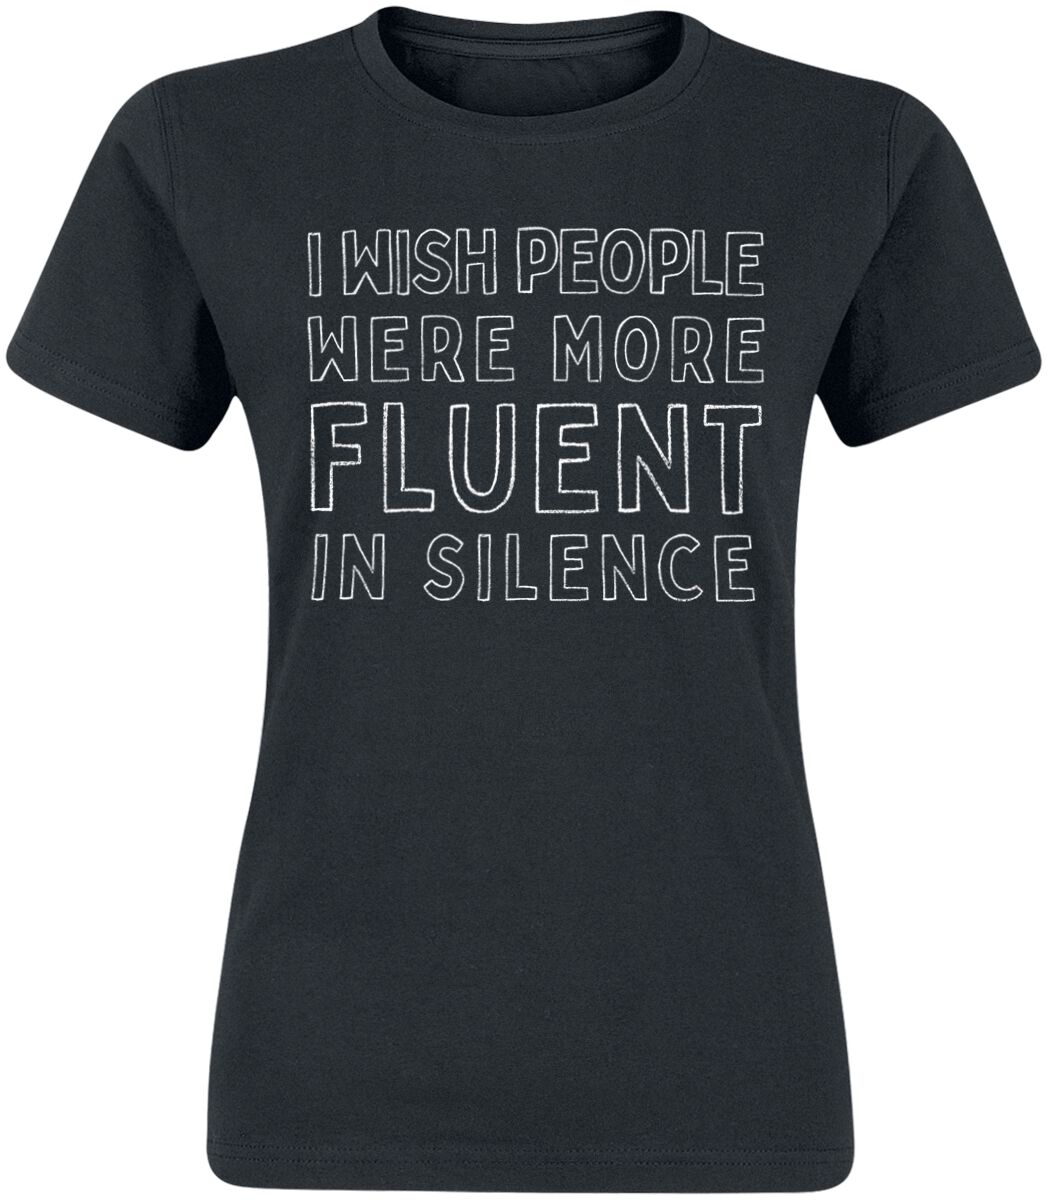 T-Shirt Manches courtes Fun de Slogans - Fluent In Silence - S à XL - pour Femme - noir